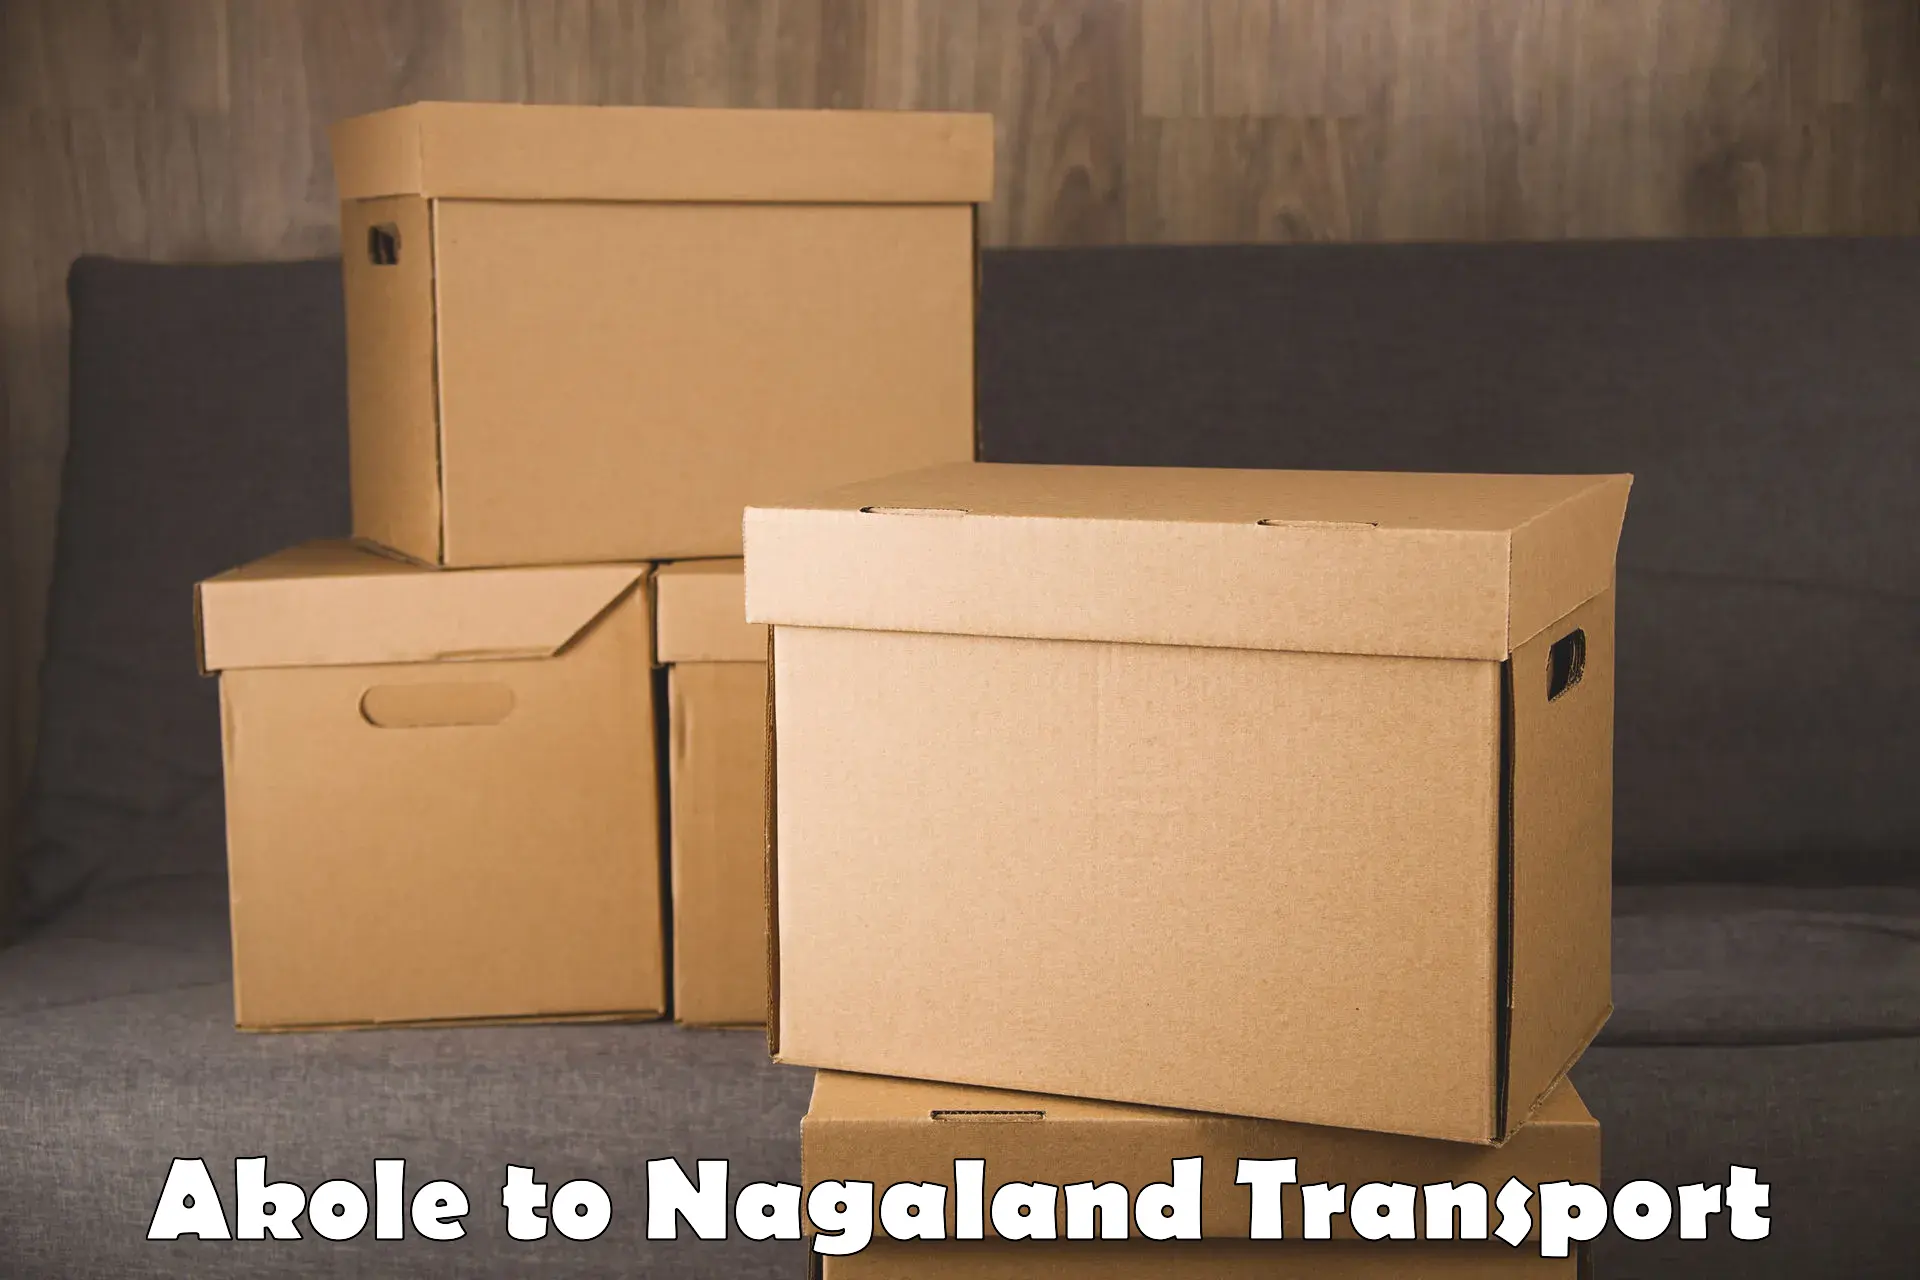 Pick up transport service Akole to Nagaland